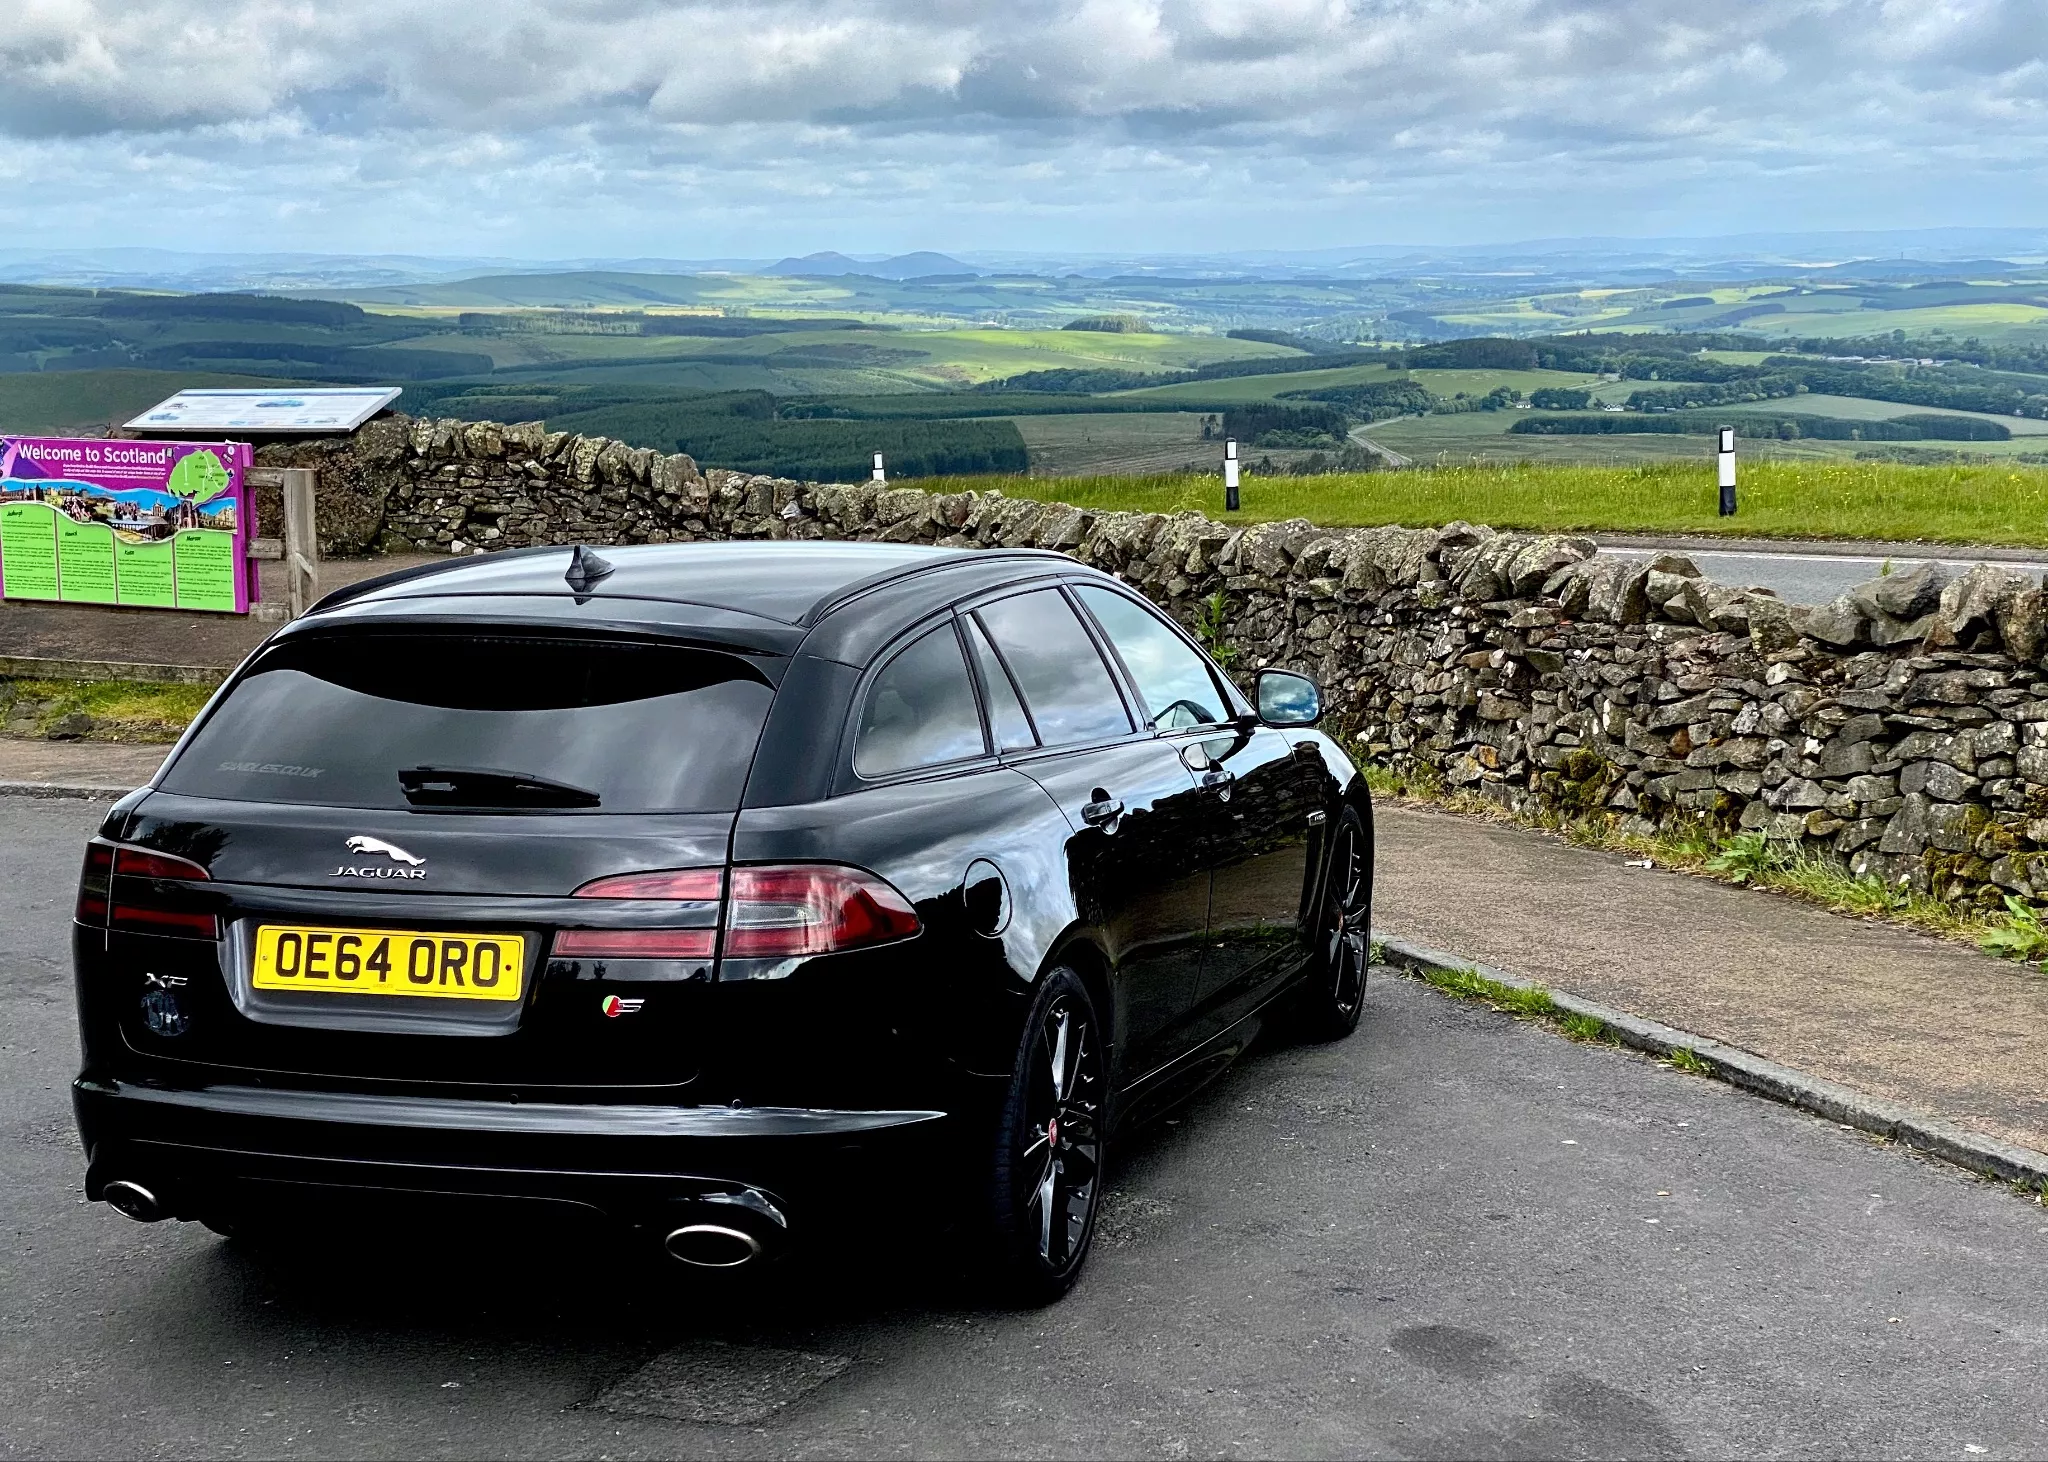 Samochód Jaguar zaparkowany na granicy Anglii i Szkocji w letni poranek 